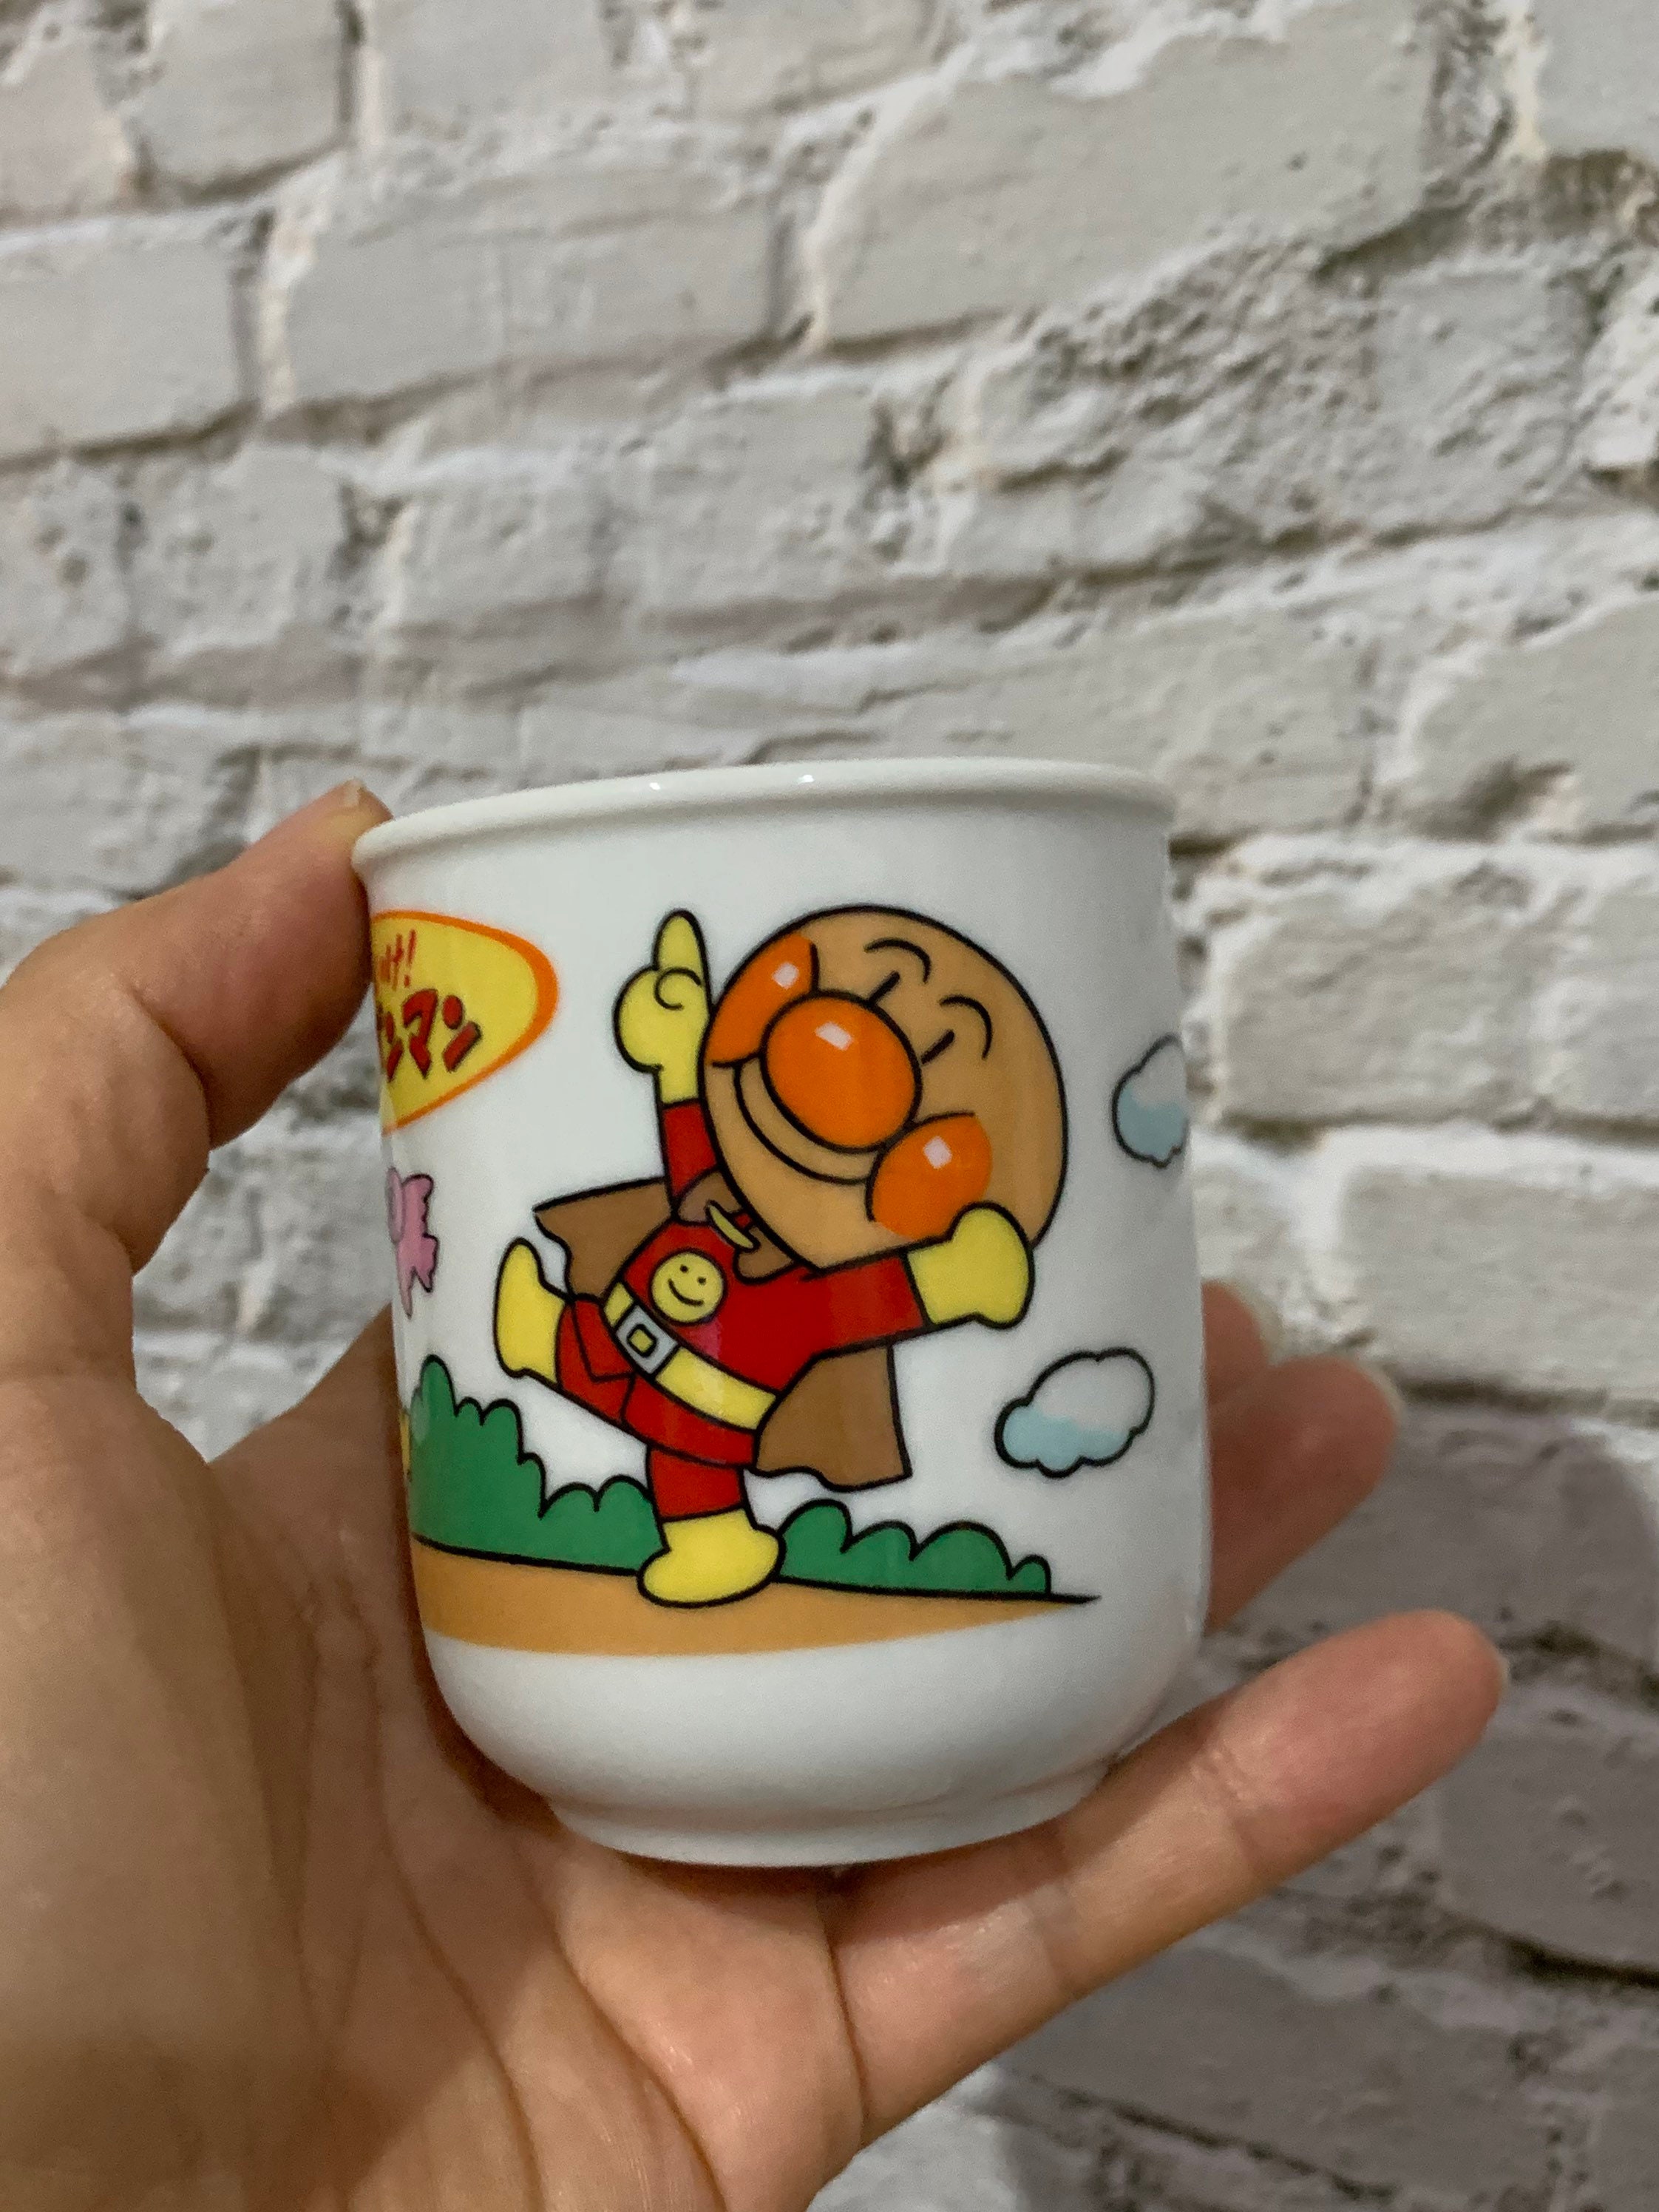 Anpanman Anime Tea Cup 